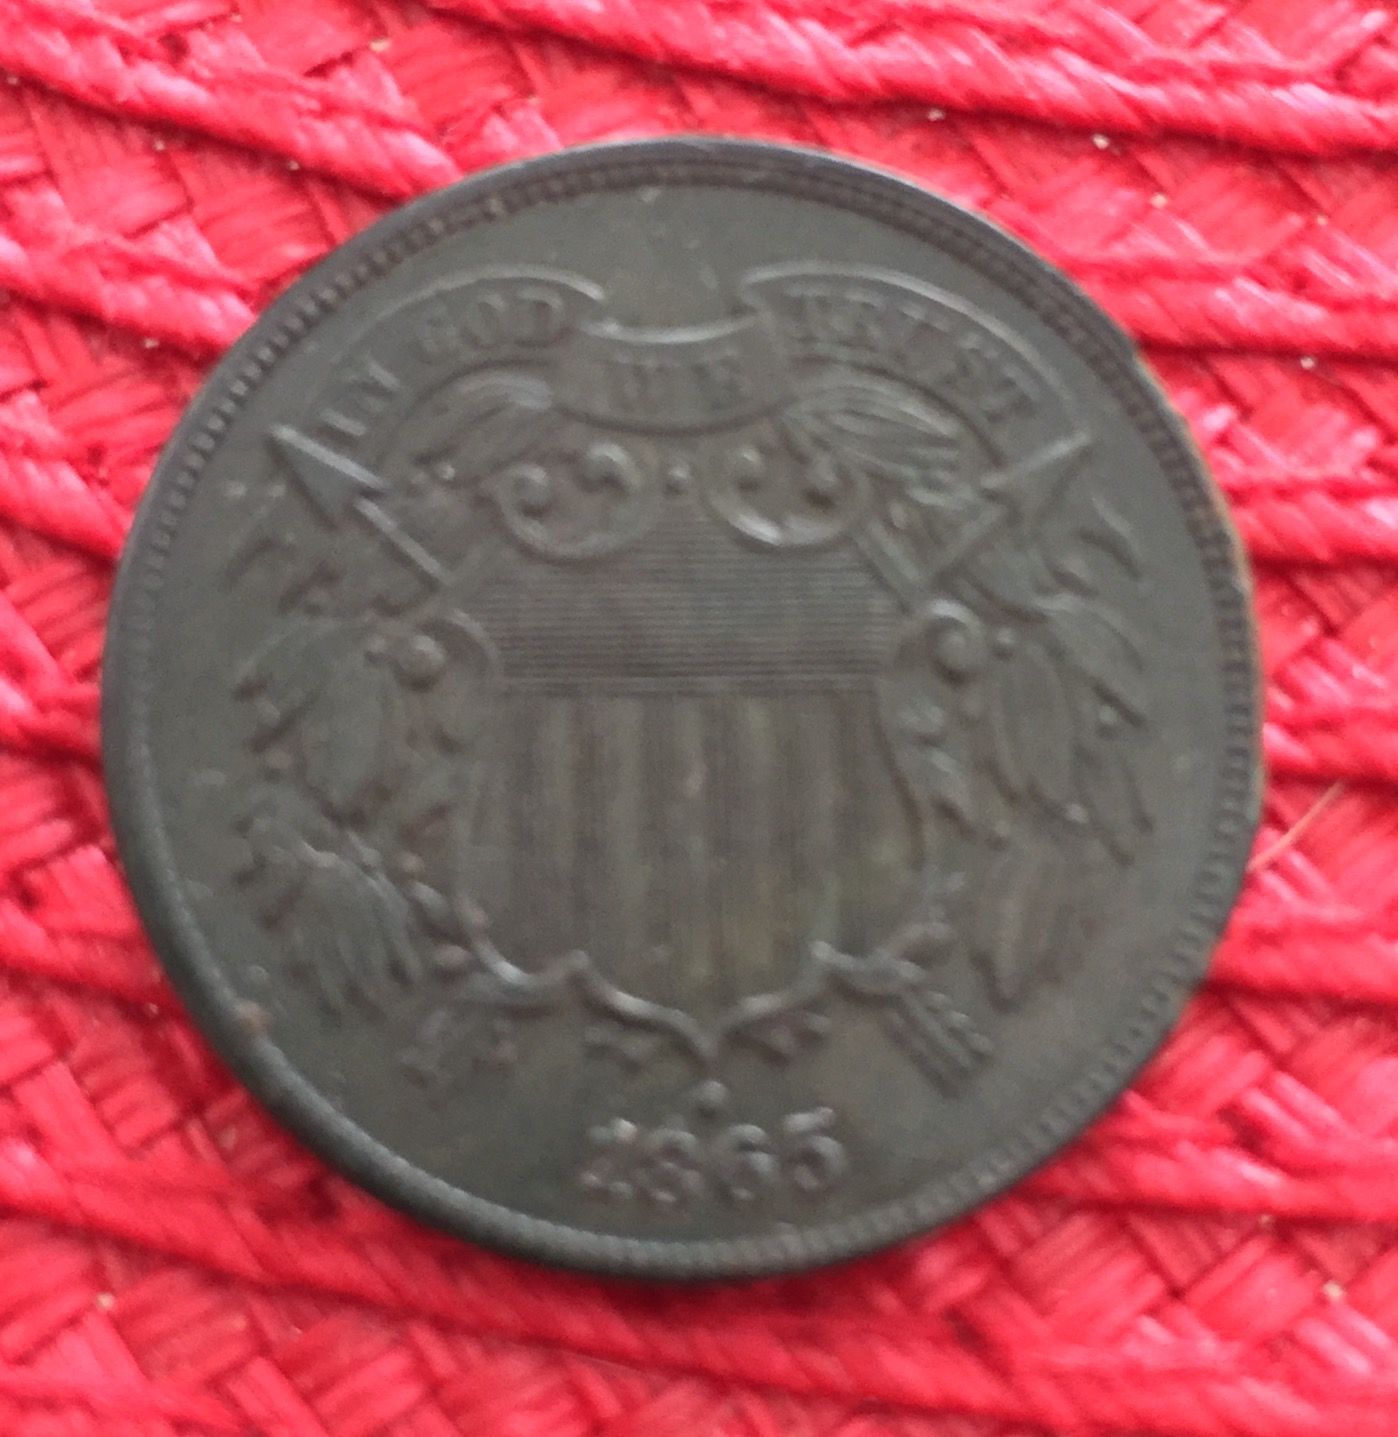 1865 2cent f